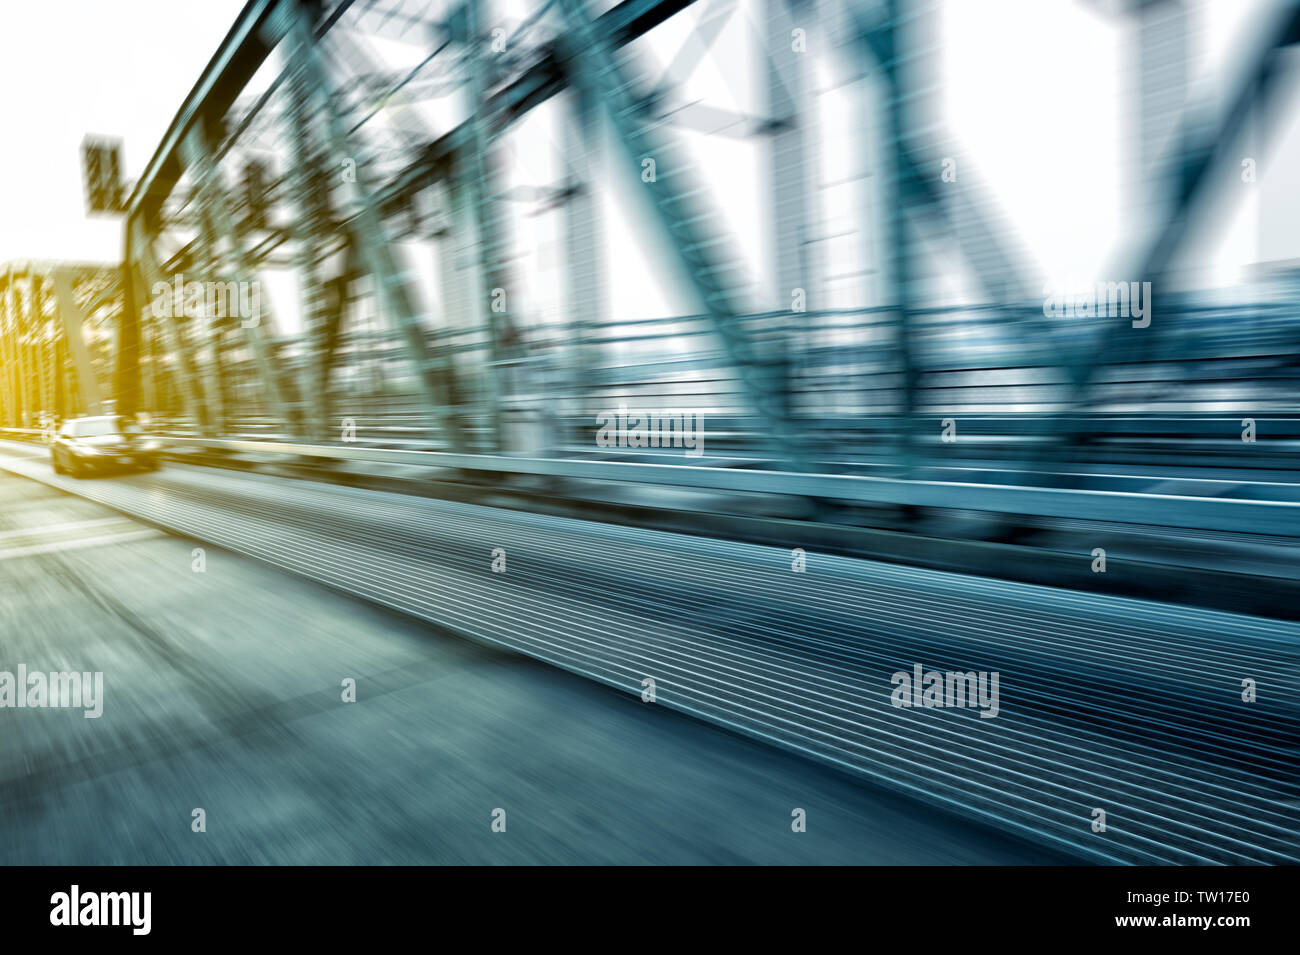 blur steel constuctions of landmark bridge in portland Stock Photo